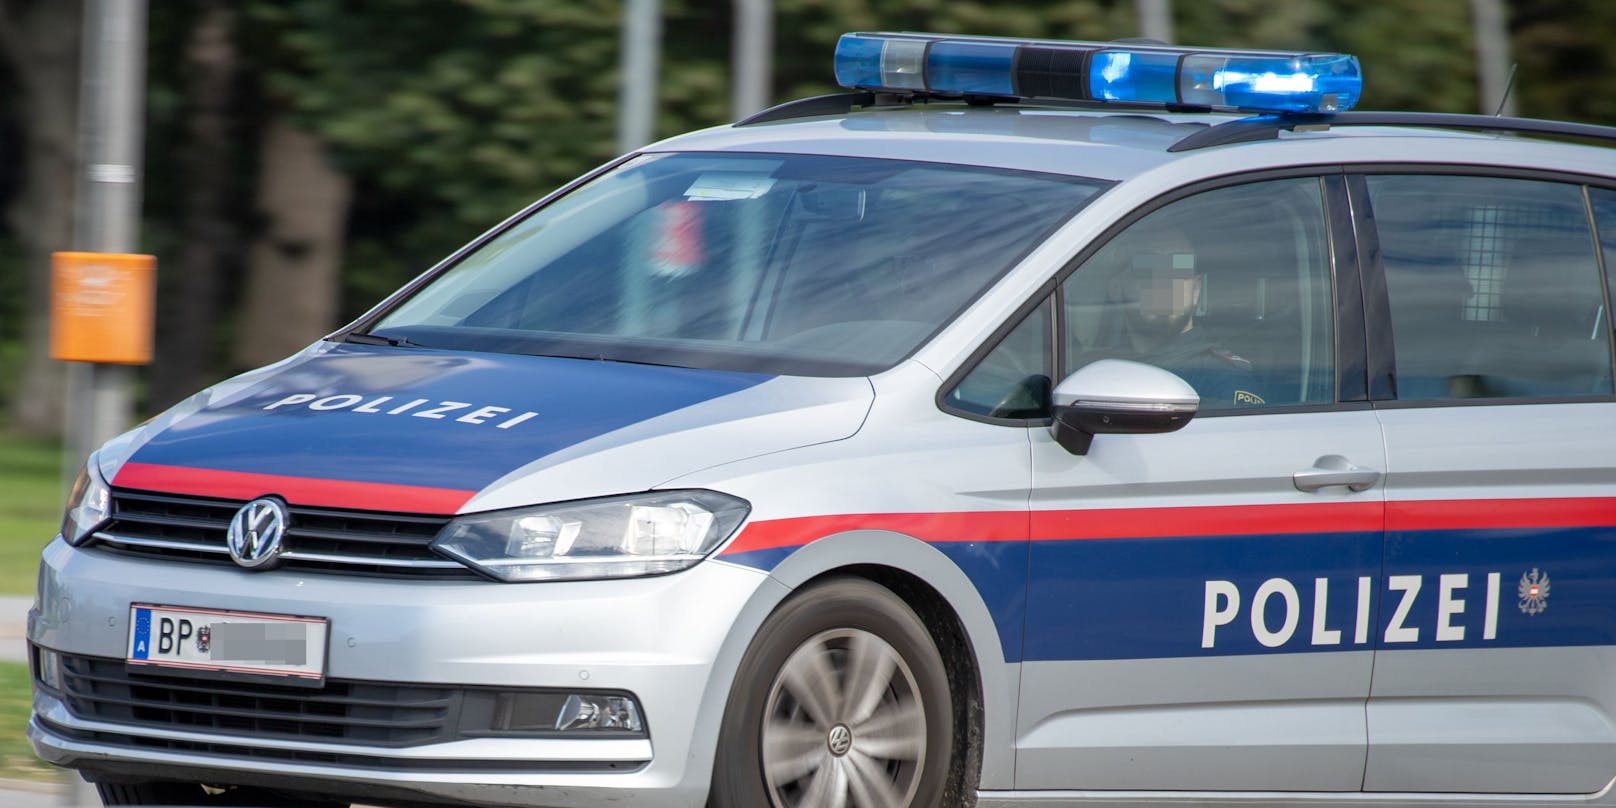 Wiener Polizeiauto im Einsatz